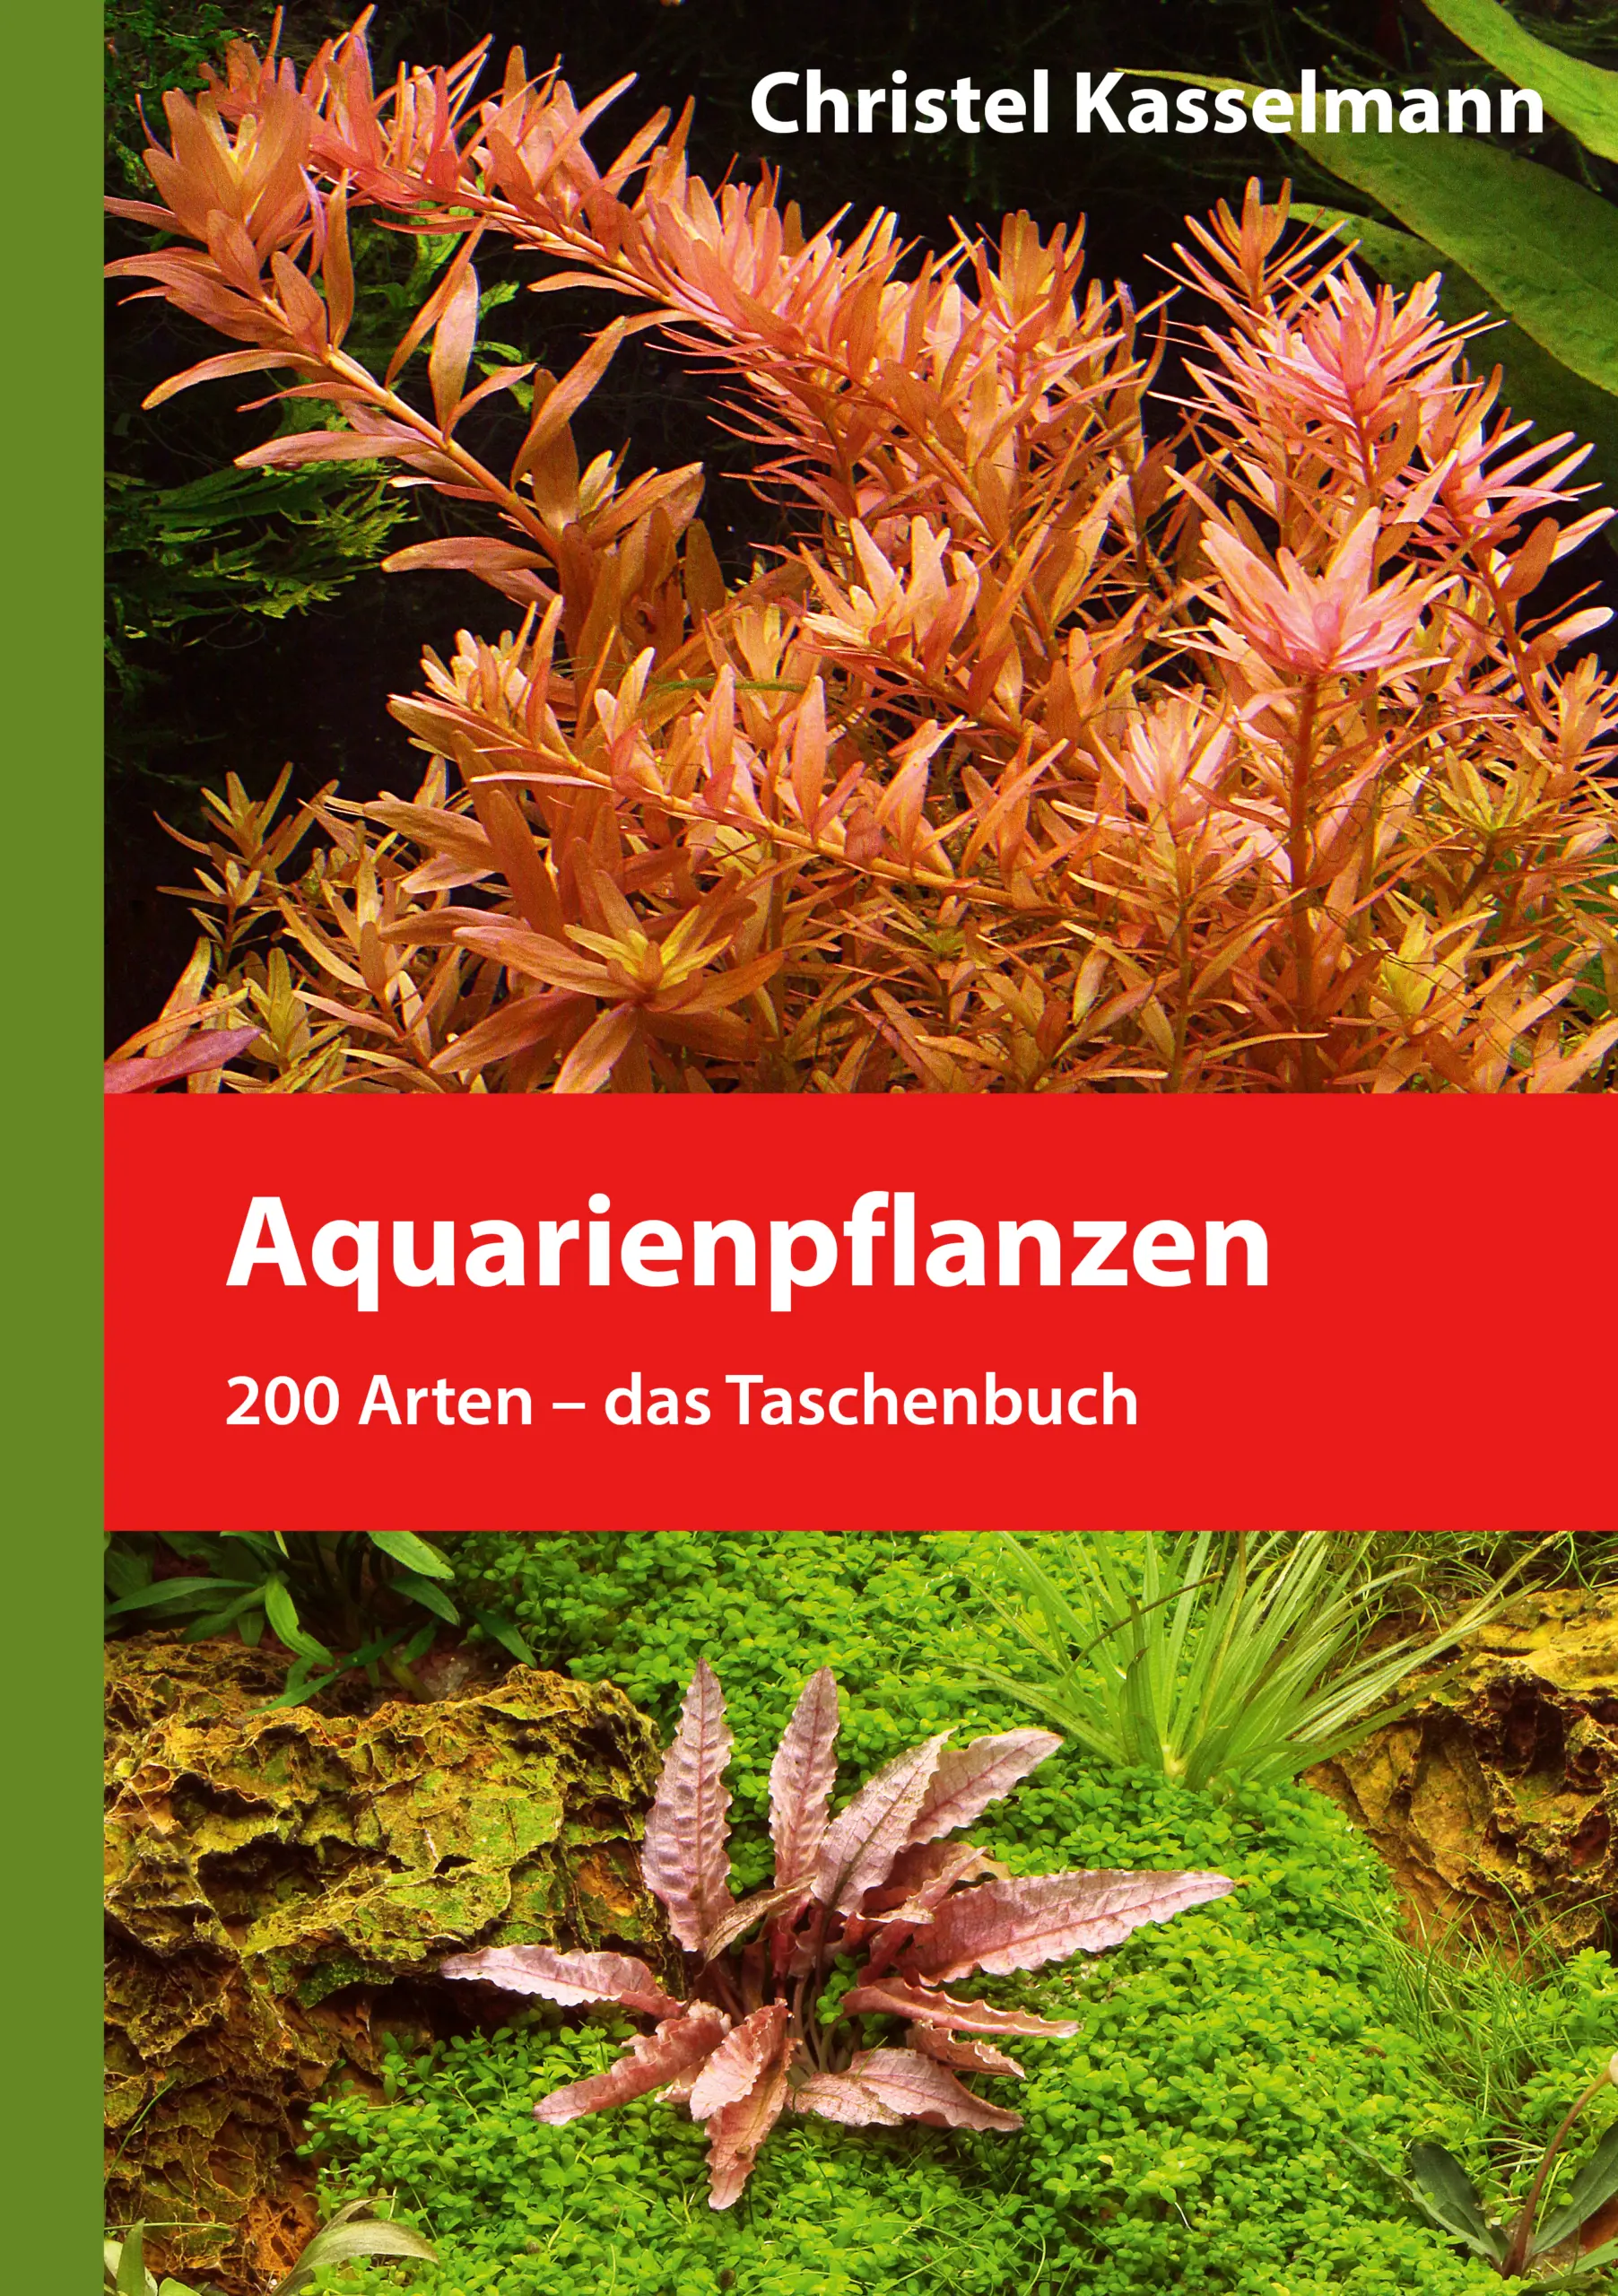 Aquarienpflanzen - das Taschenbuch / Christel Kasselmann